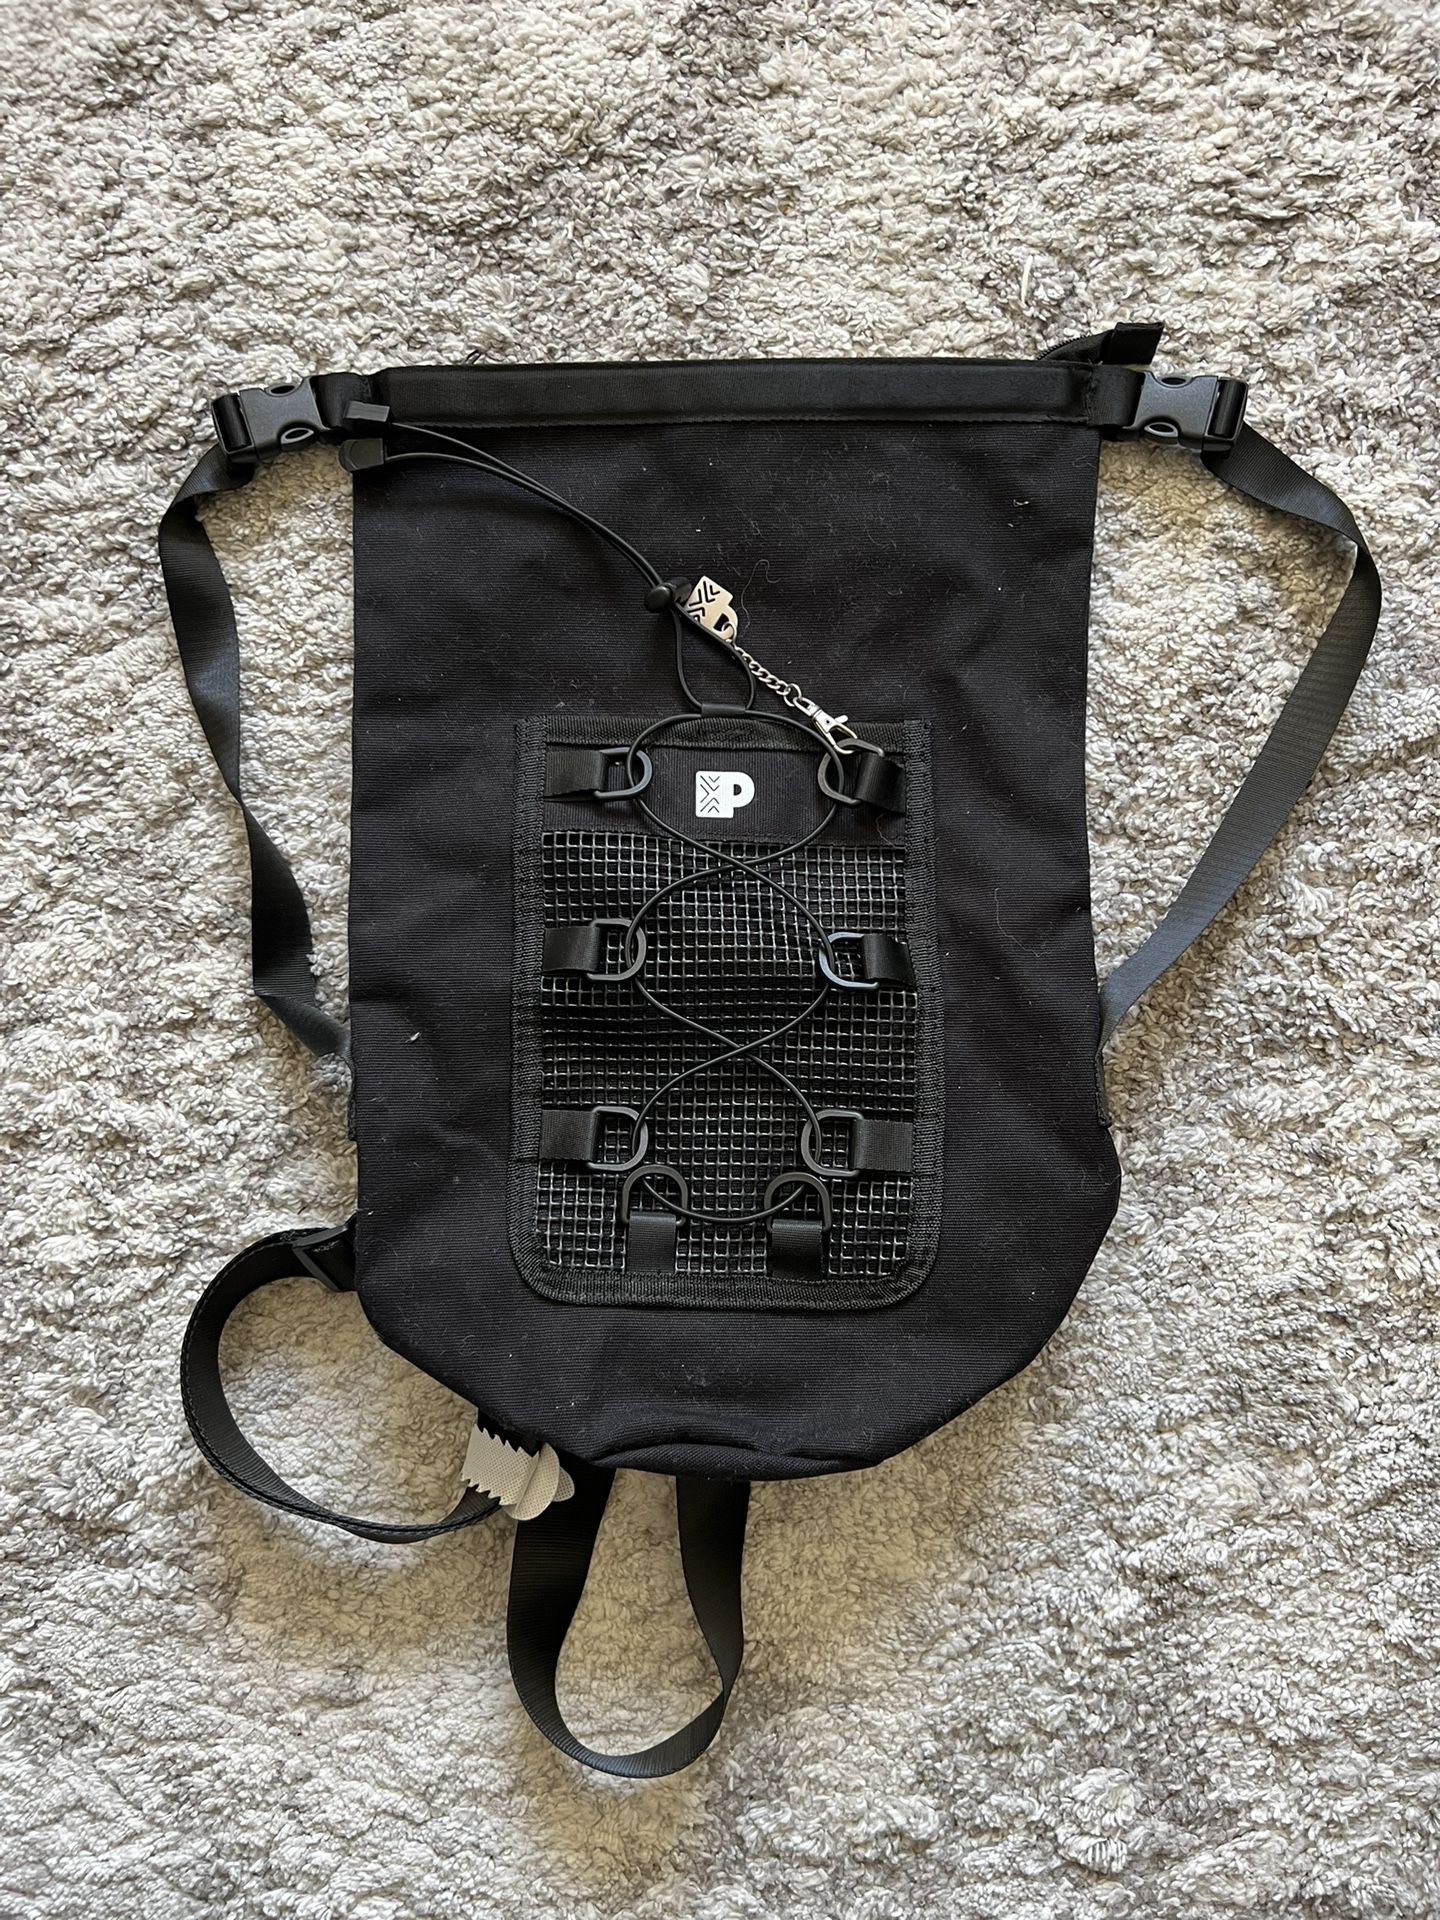 Peets Coffee Messenger Bag Backpack Adjustable Straps Black